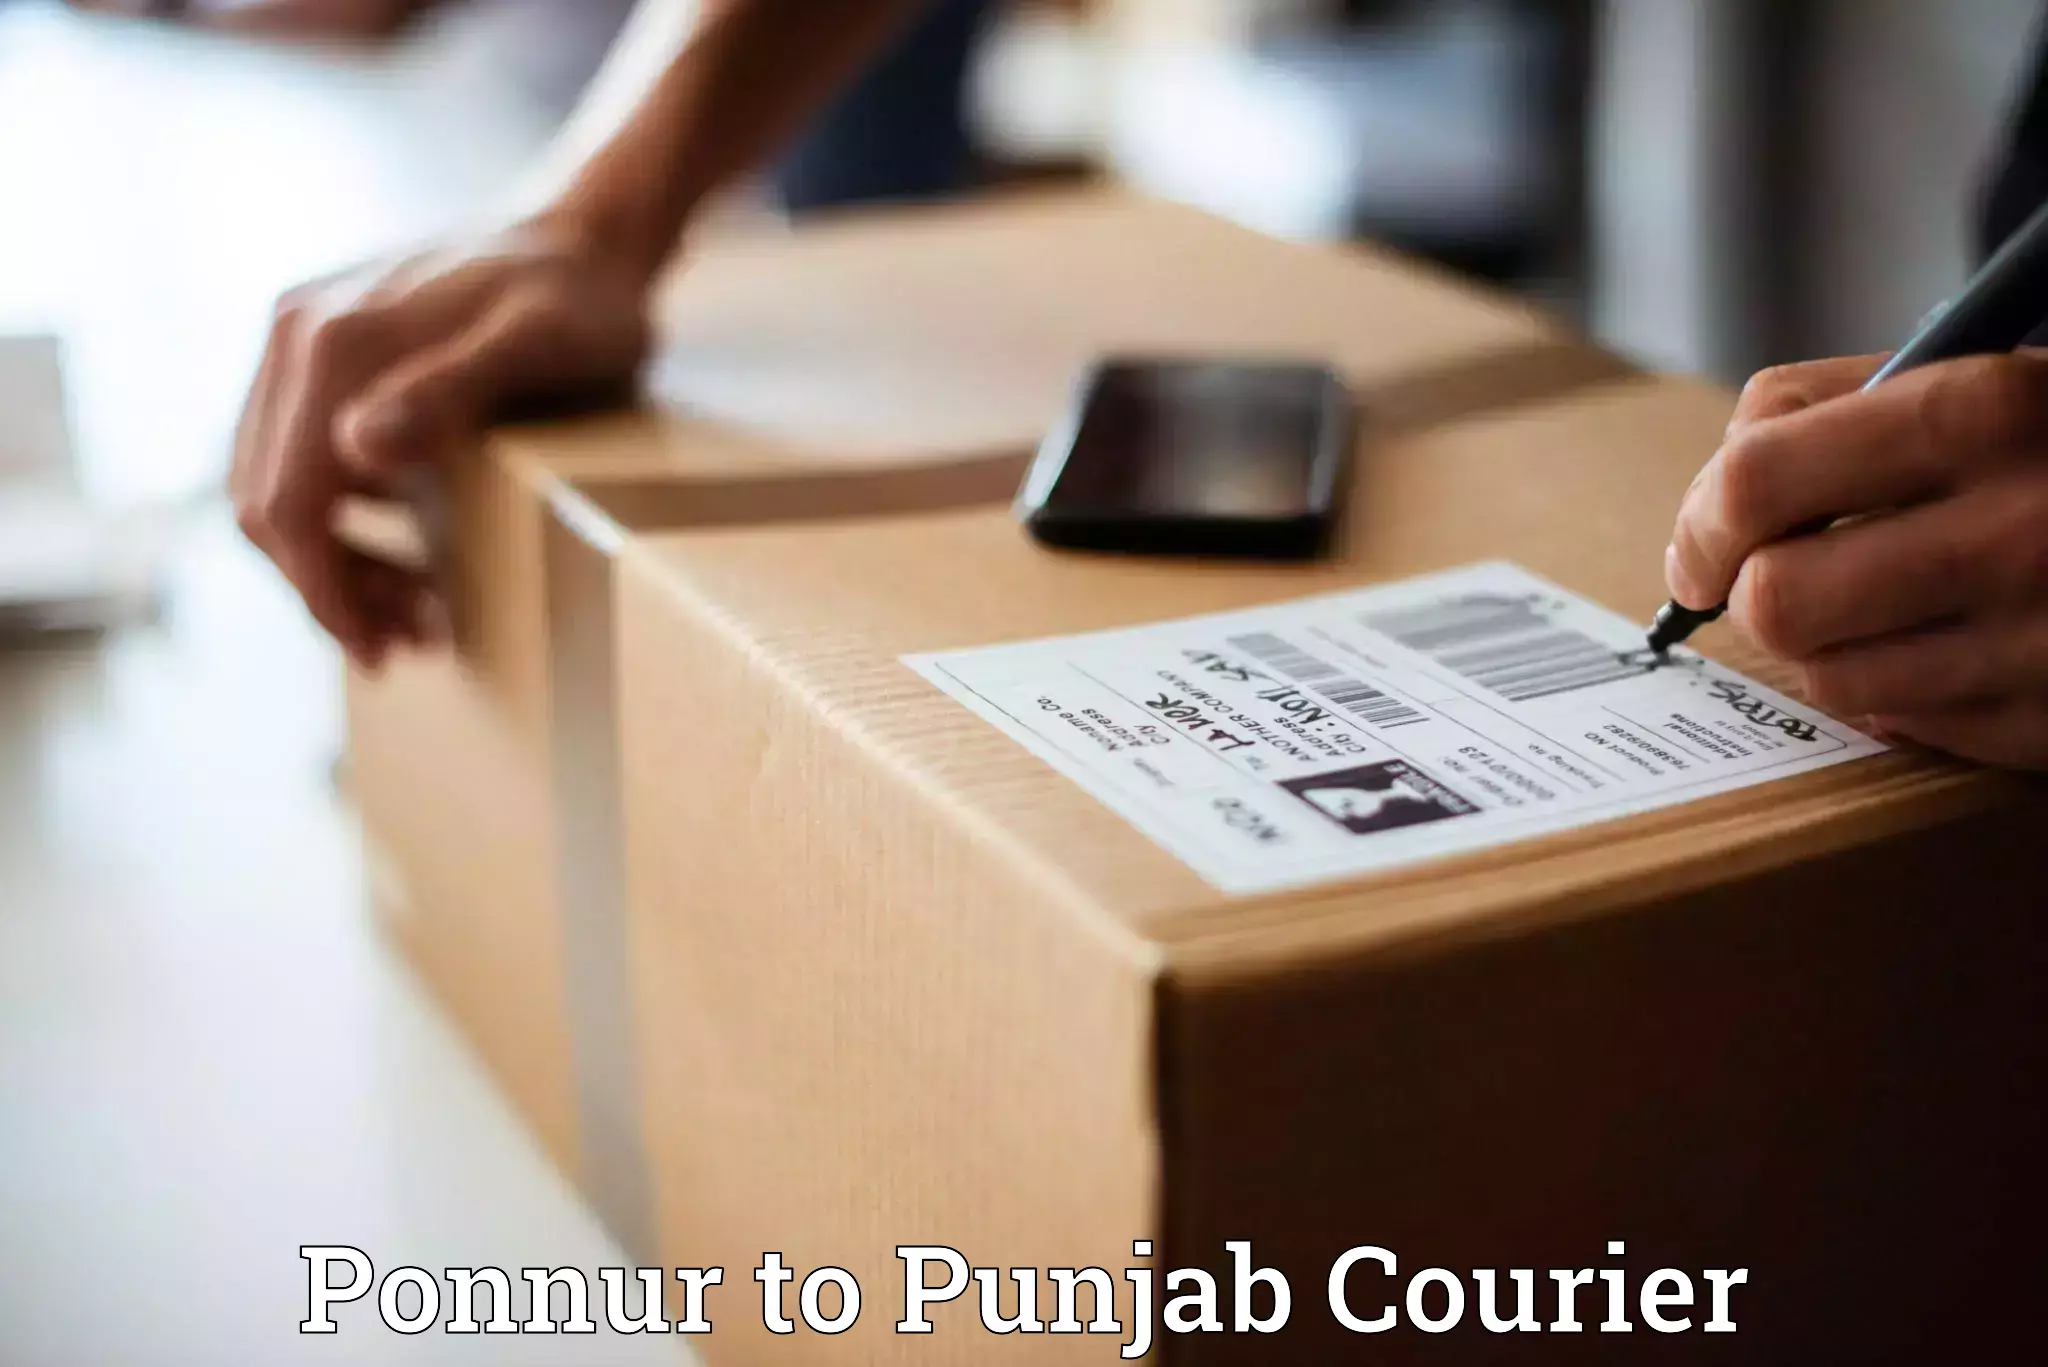 Courier service comparison in Ponnur to Zirakpur